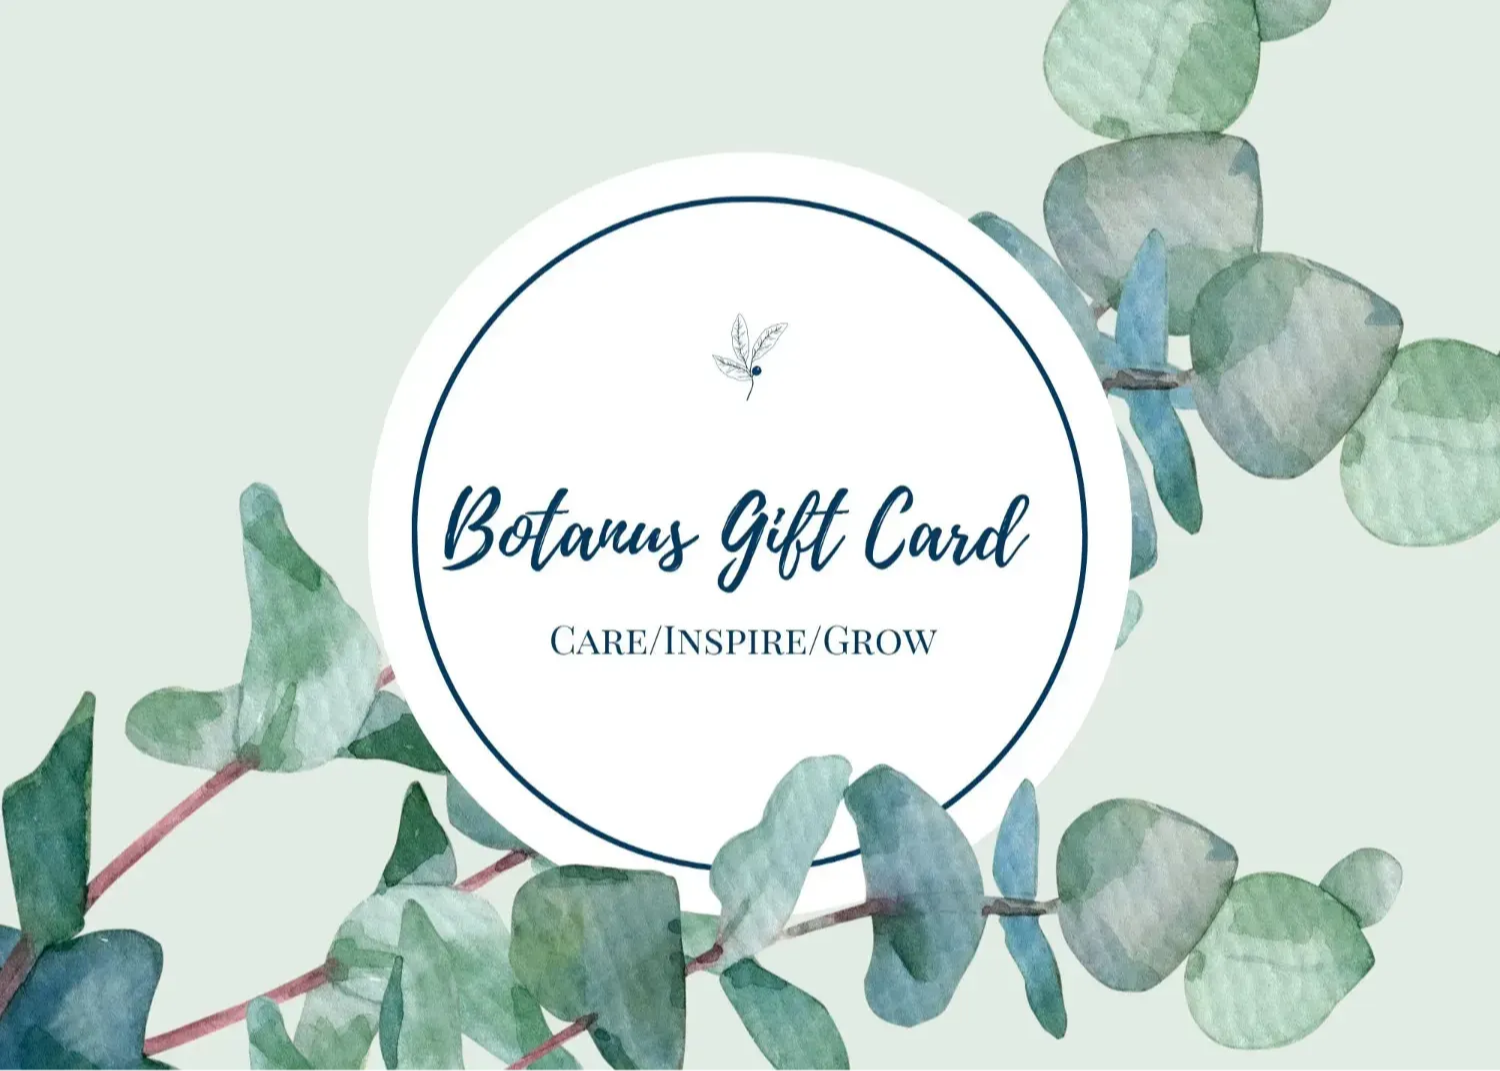 Botanus Gift Card